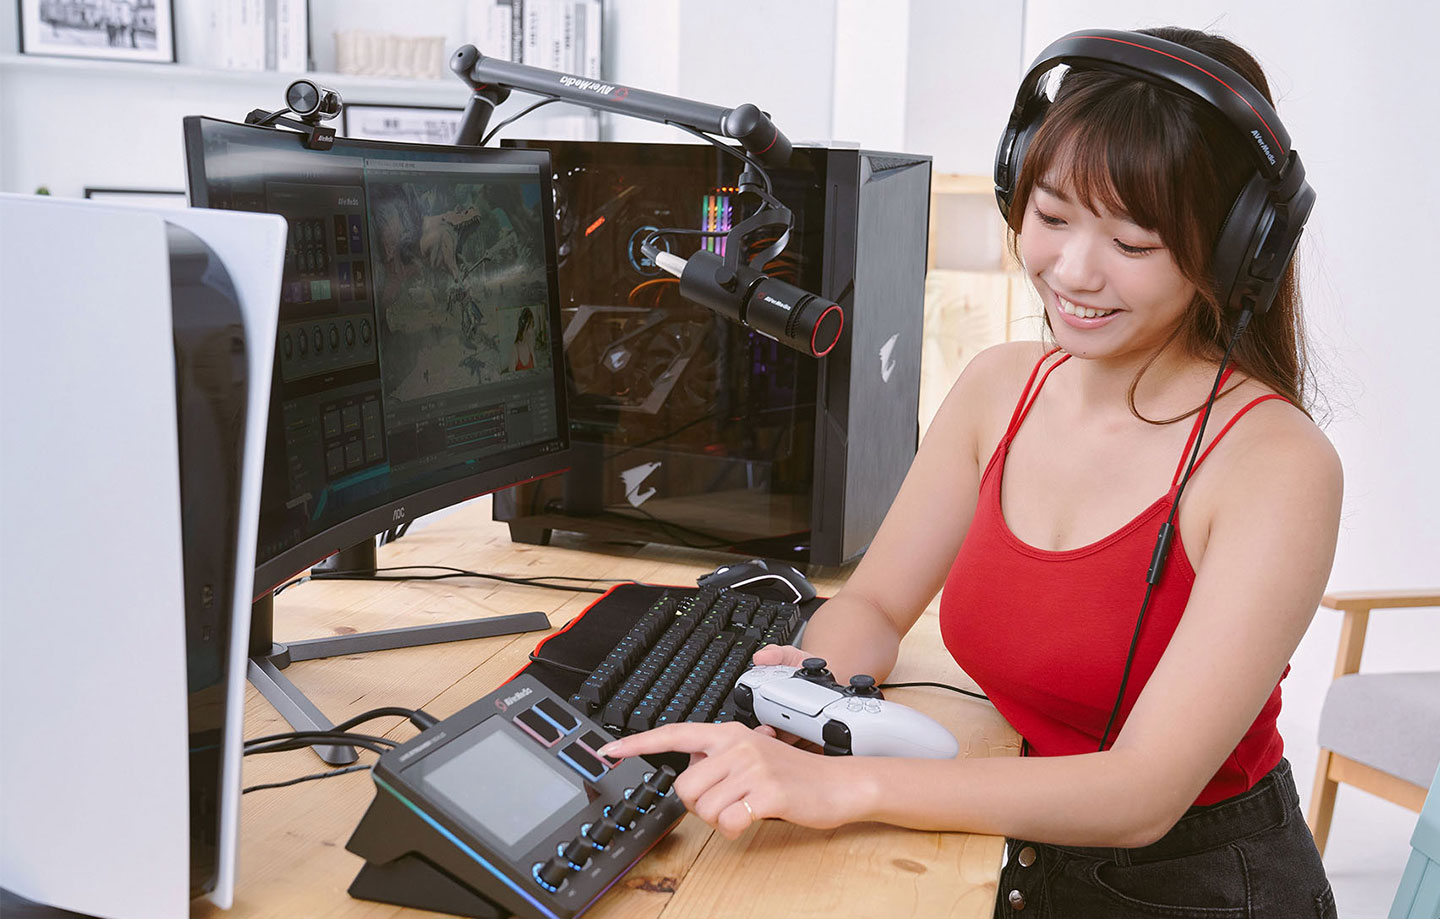 AX310 可以支援「雙音軌檔分流輸出」，讓直播者監聽耳機內容與直播內容分離，可以自由調控不同的混音與音量，使用起來更便利。